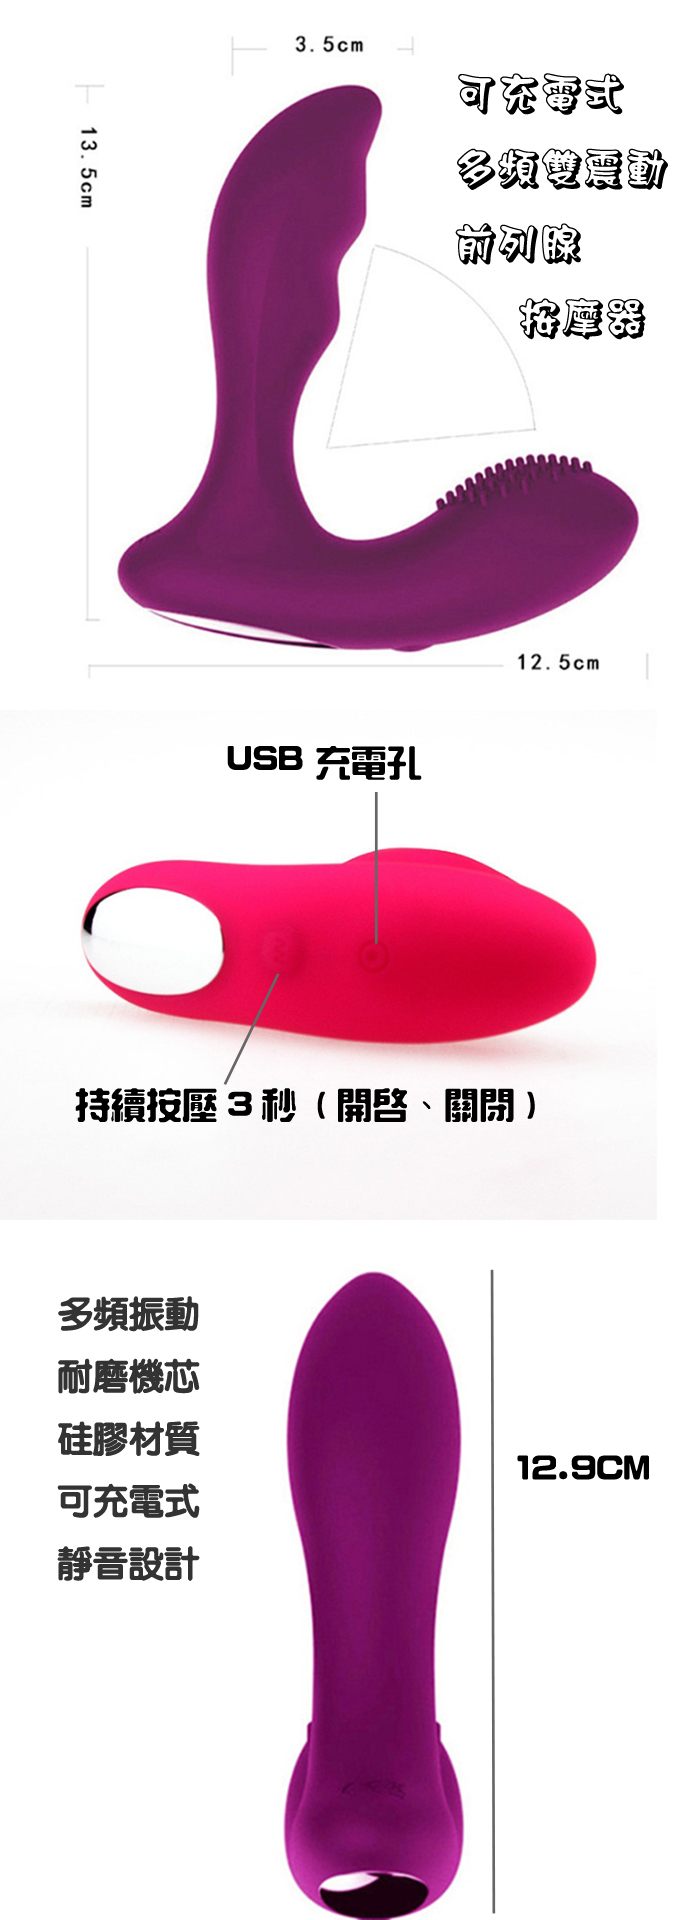 前列腺刺激振動後庭按摩器(粉色)USB充電